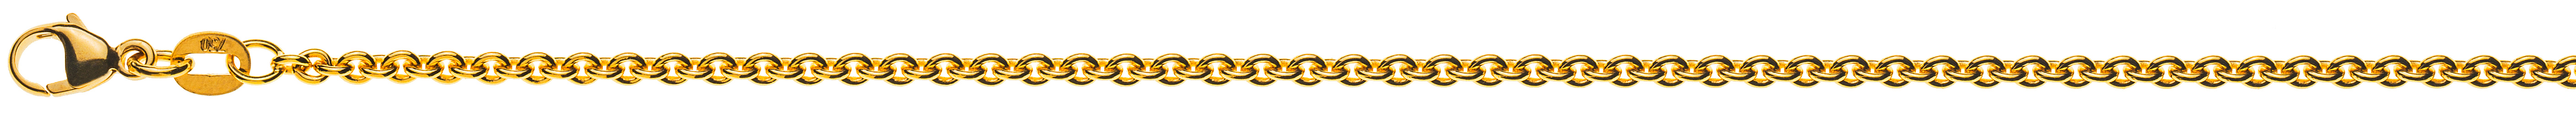 AURONOS Prestige Halskette Gelbgold 18K Rundanker 55cm 2.3mm